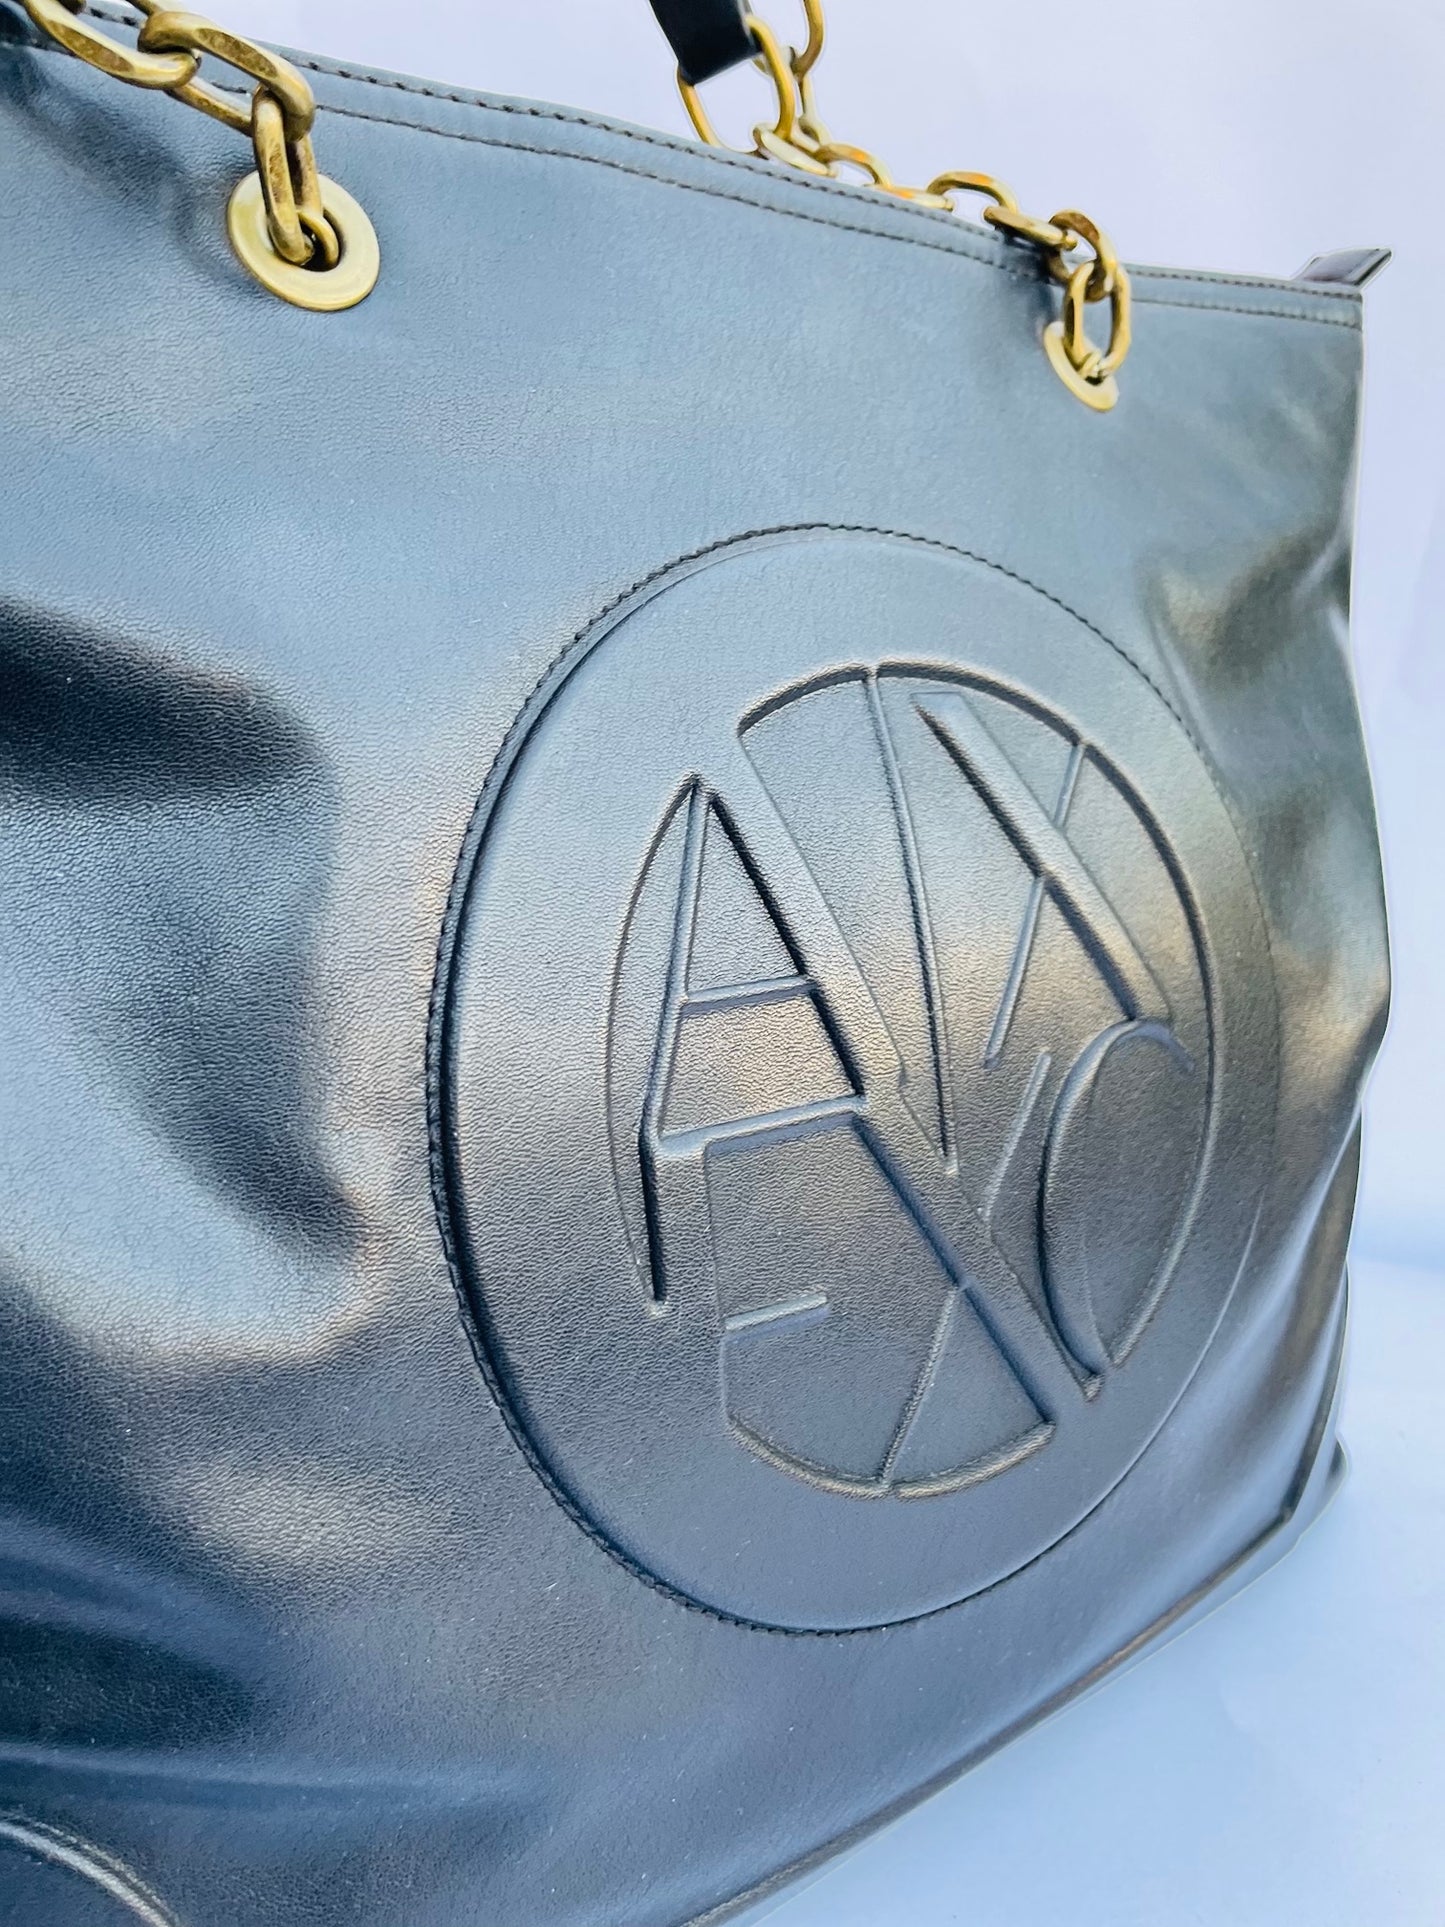 Armani exchange bag